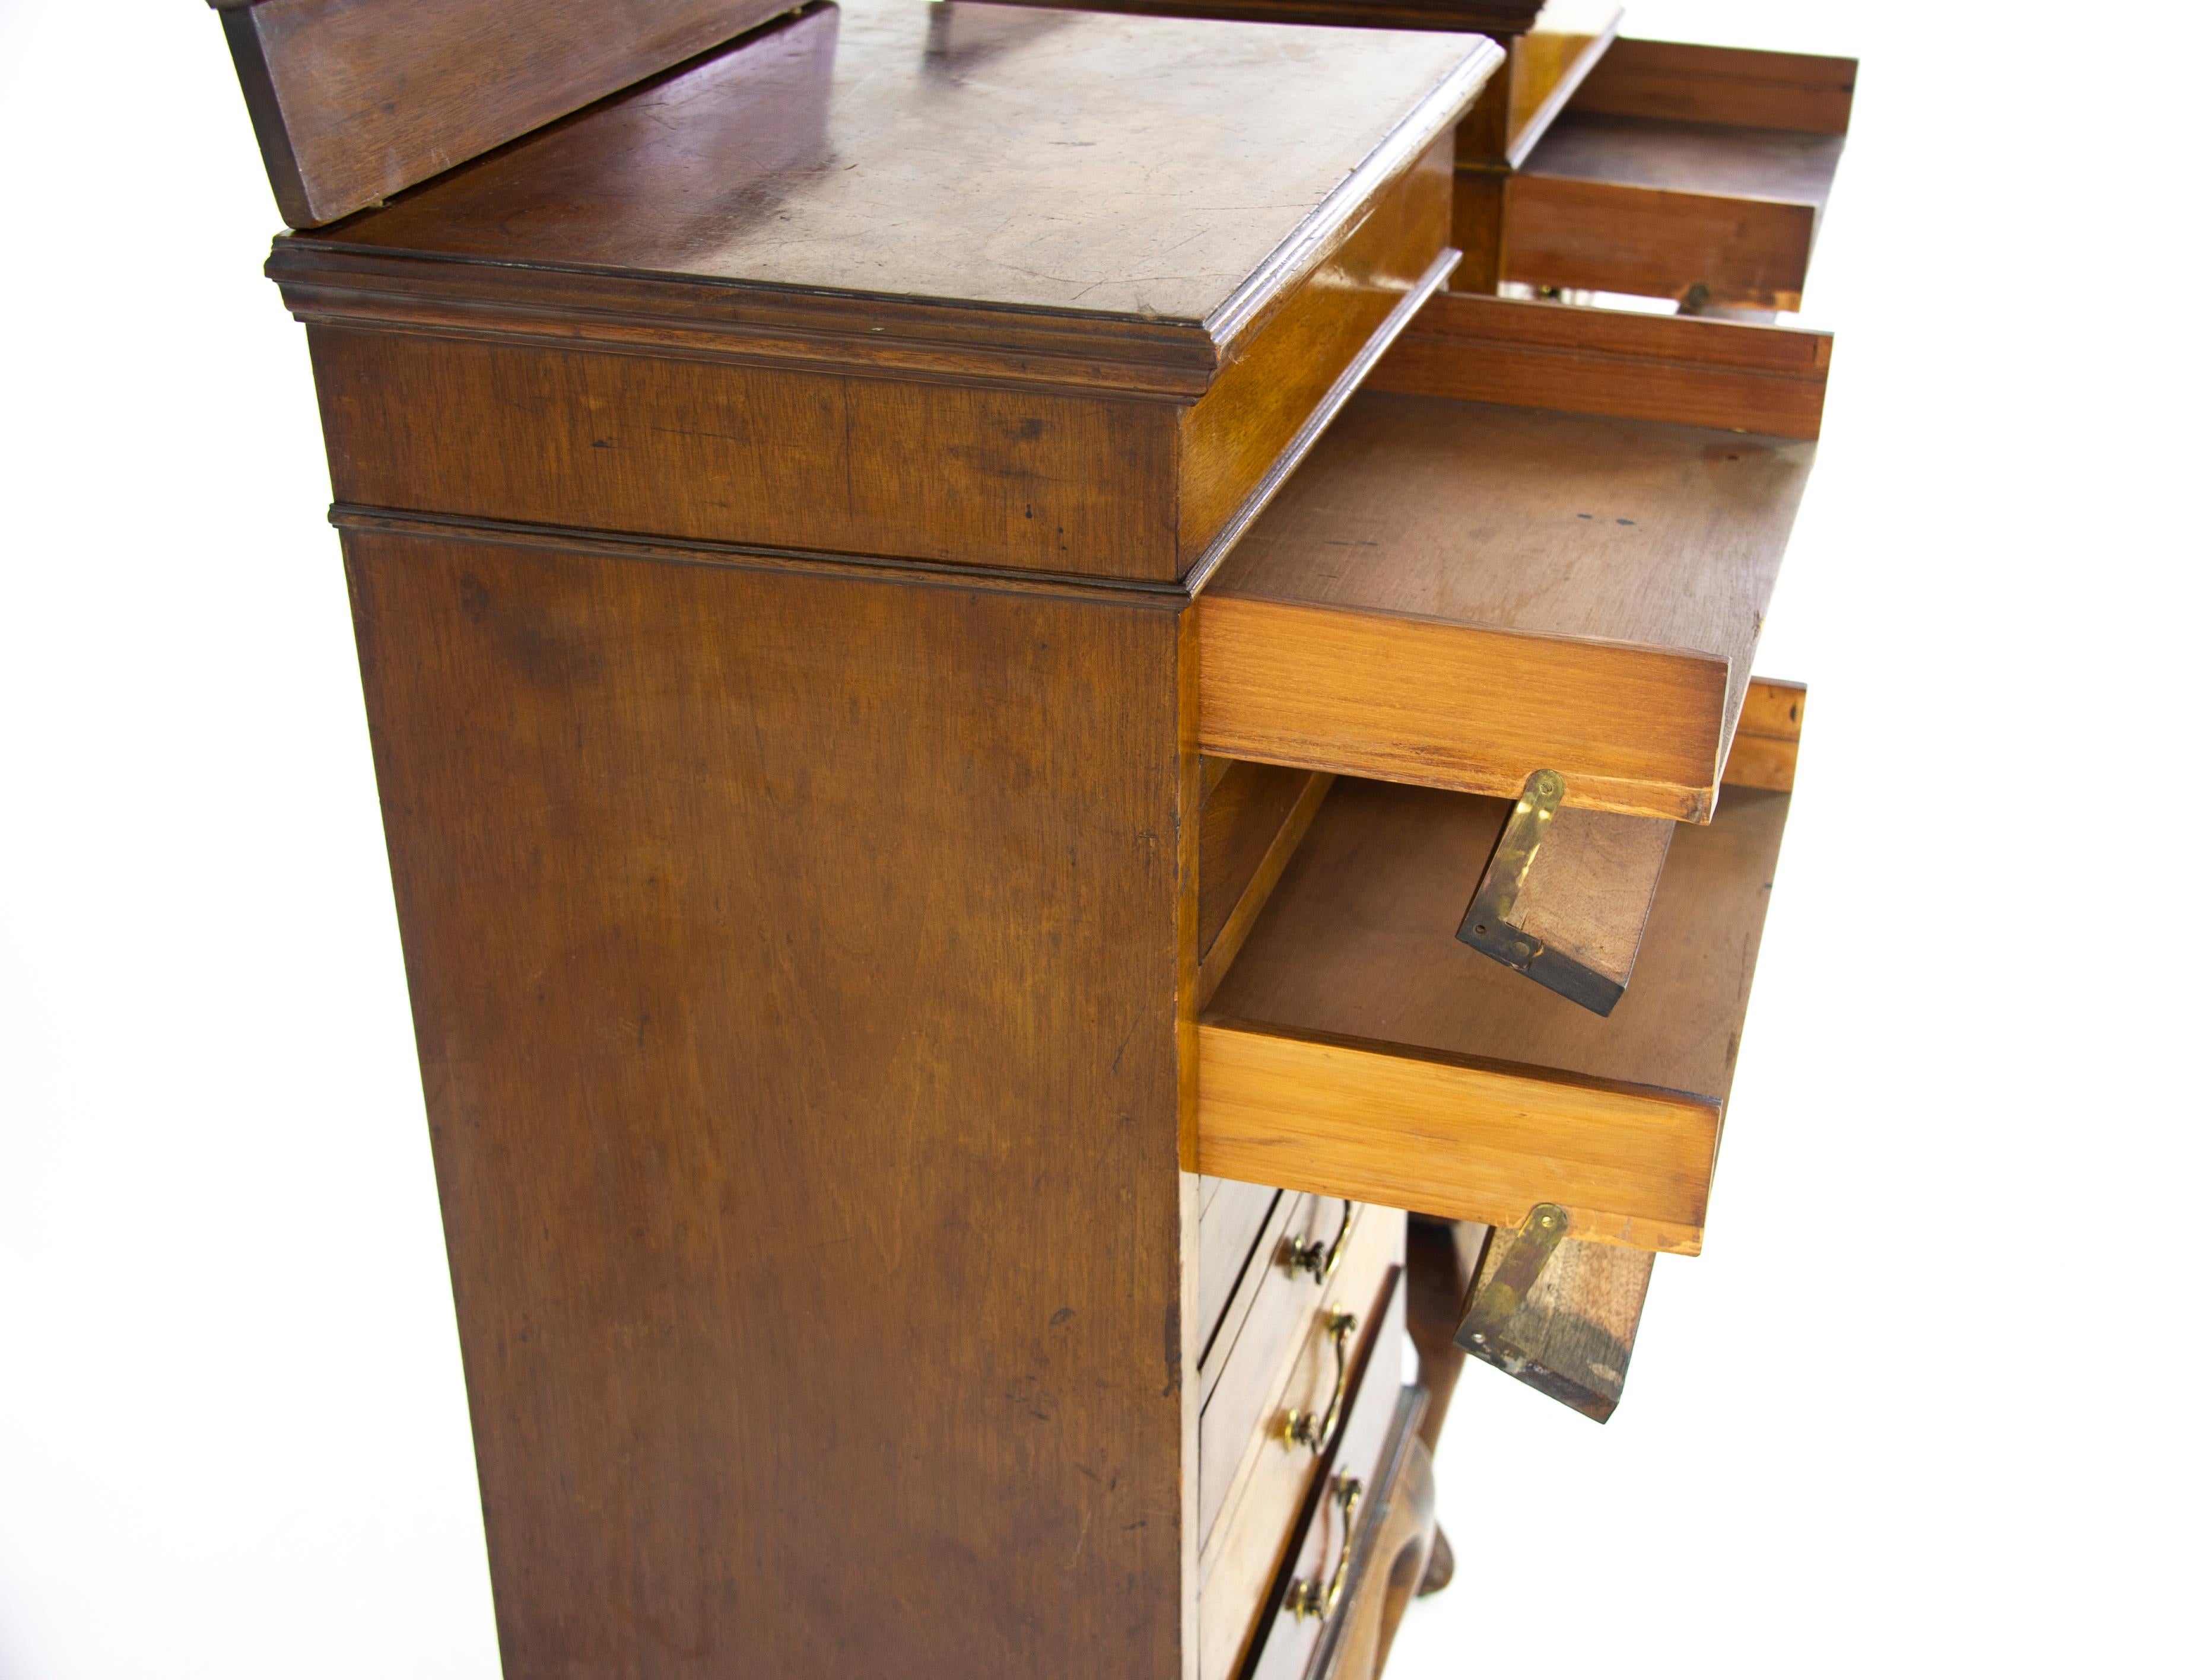 Scottish Sheet Music Cabinets, File Cabinets, Walnut, Scotland 1910, Antiques, B1208